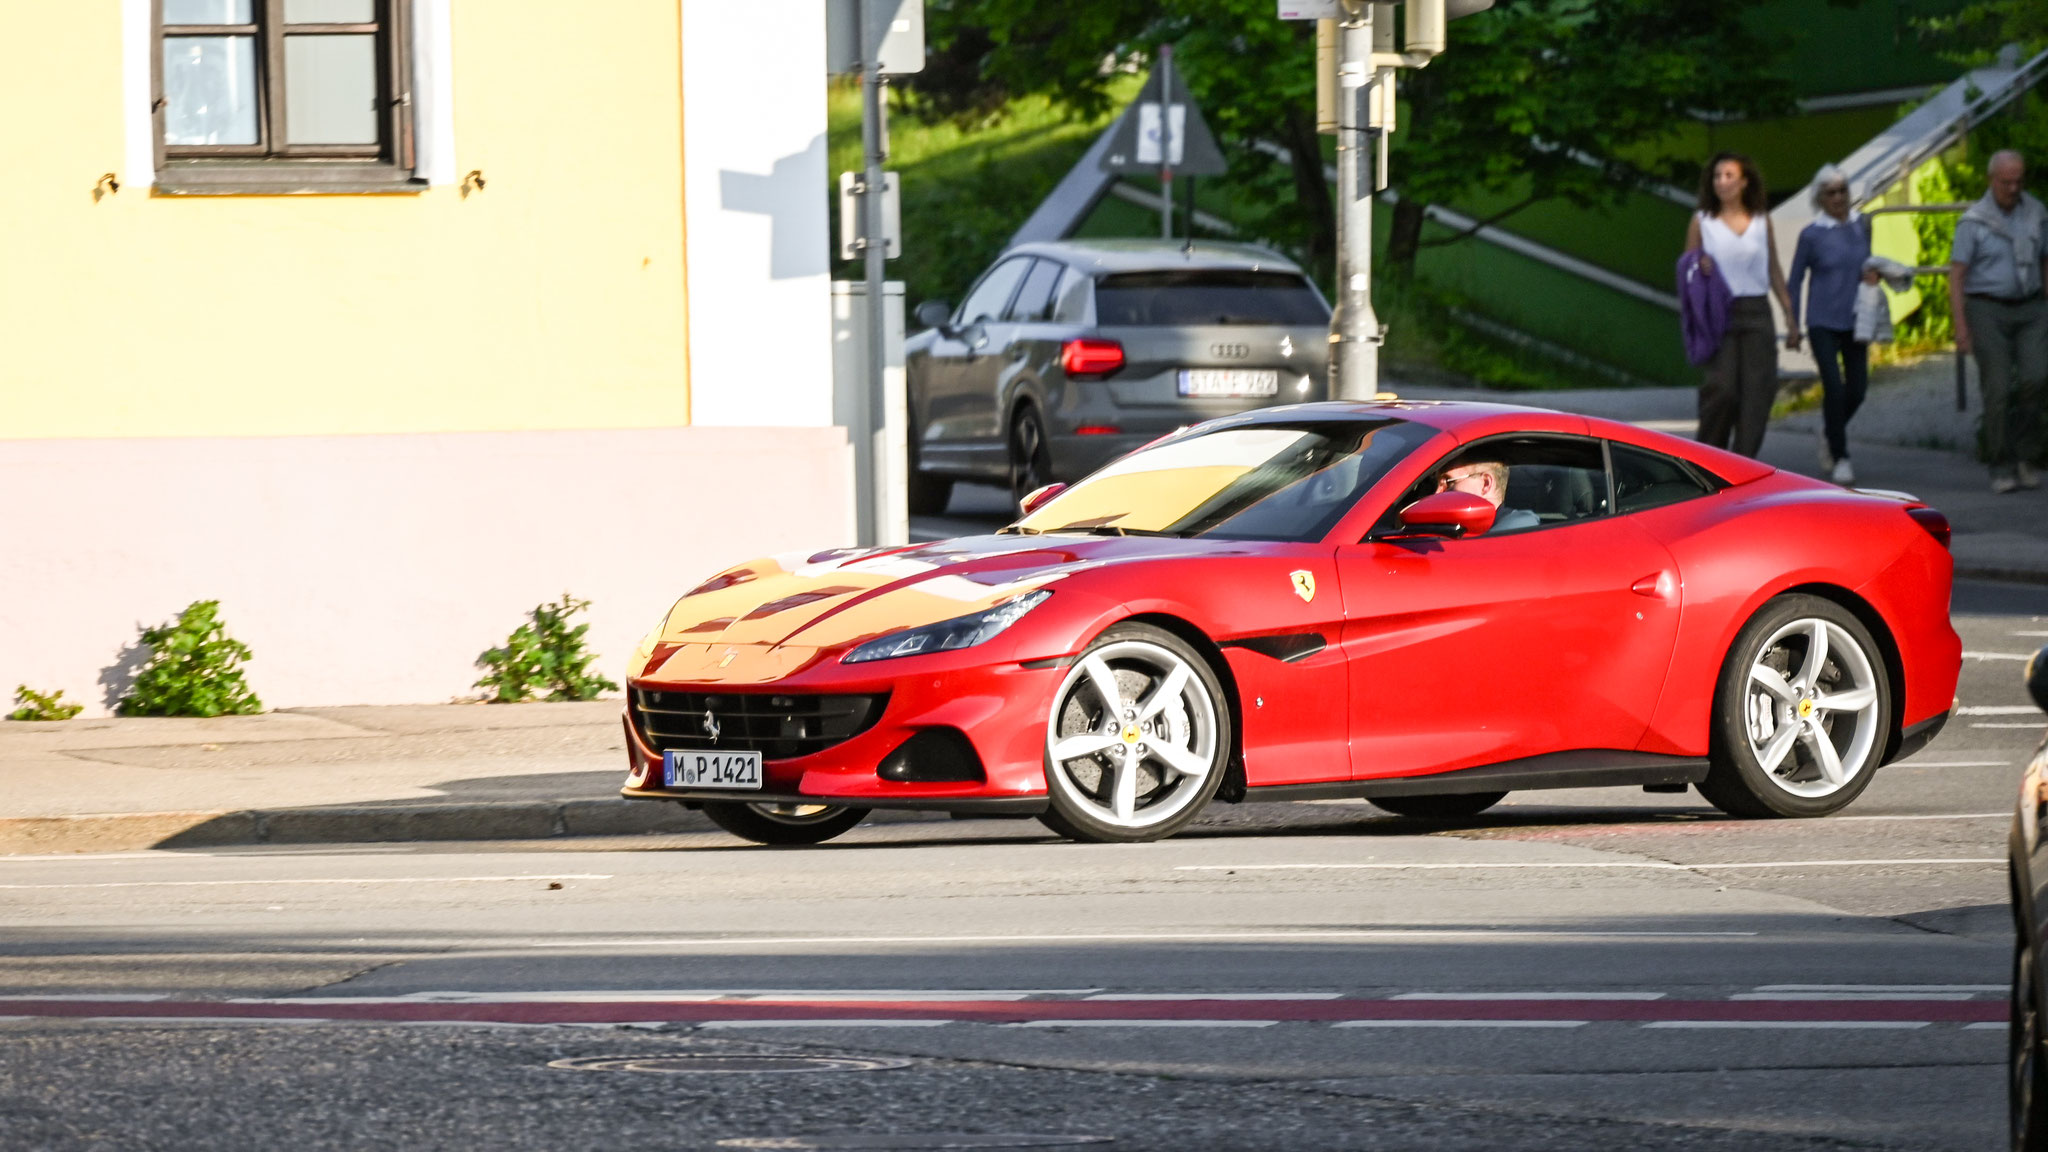 Ferrari Portofino M - M-P1421